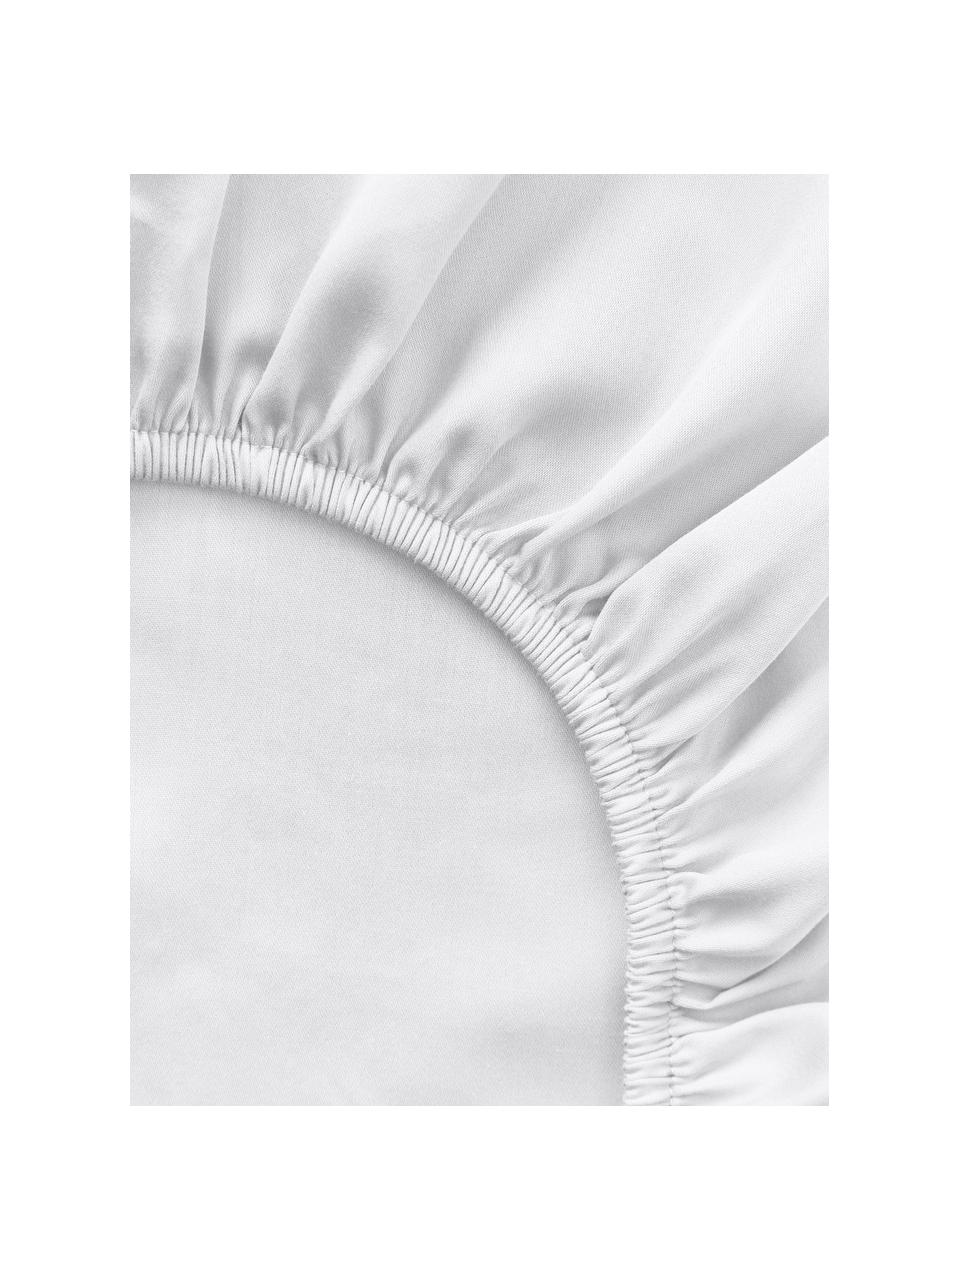 Sábana bajera de satén Comfort, Blanco, Cama 150/160 cm (160 x 200 x 25 cm)